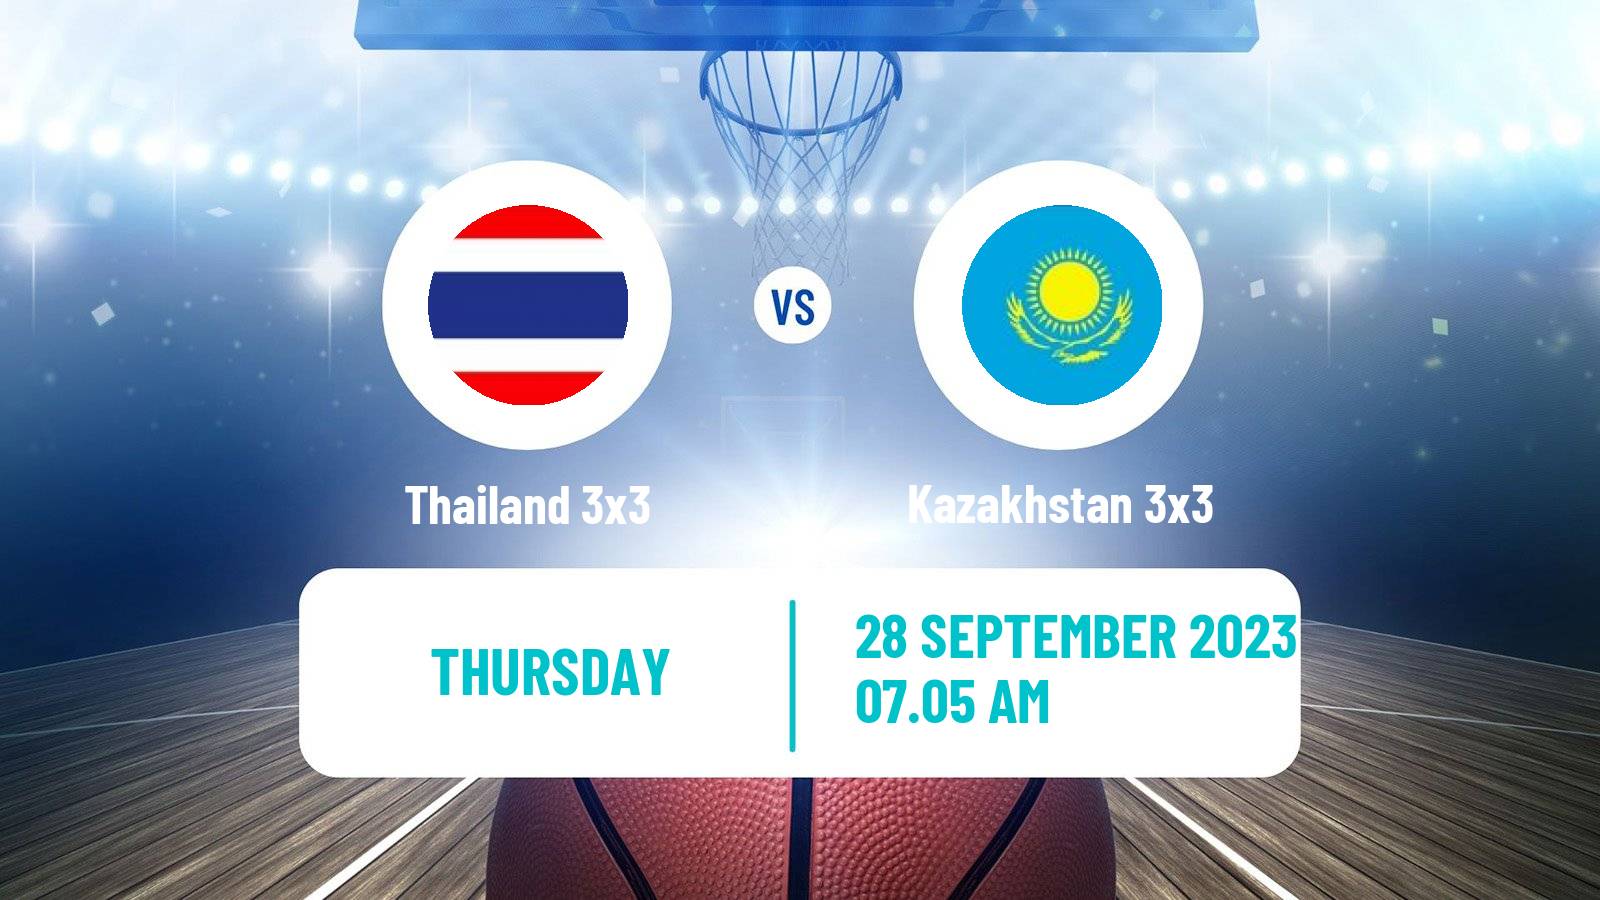 Basketball Asian Games Basketball 3x3 Thailand 3x3 - Kazakhstan 3x3